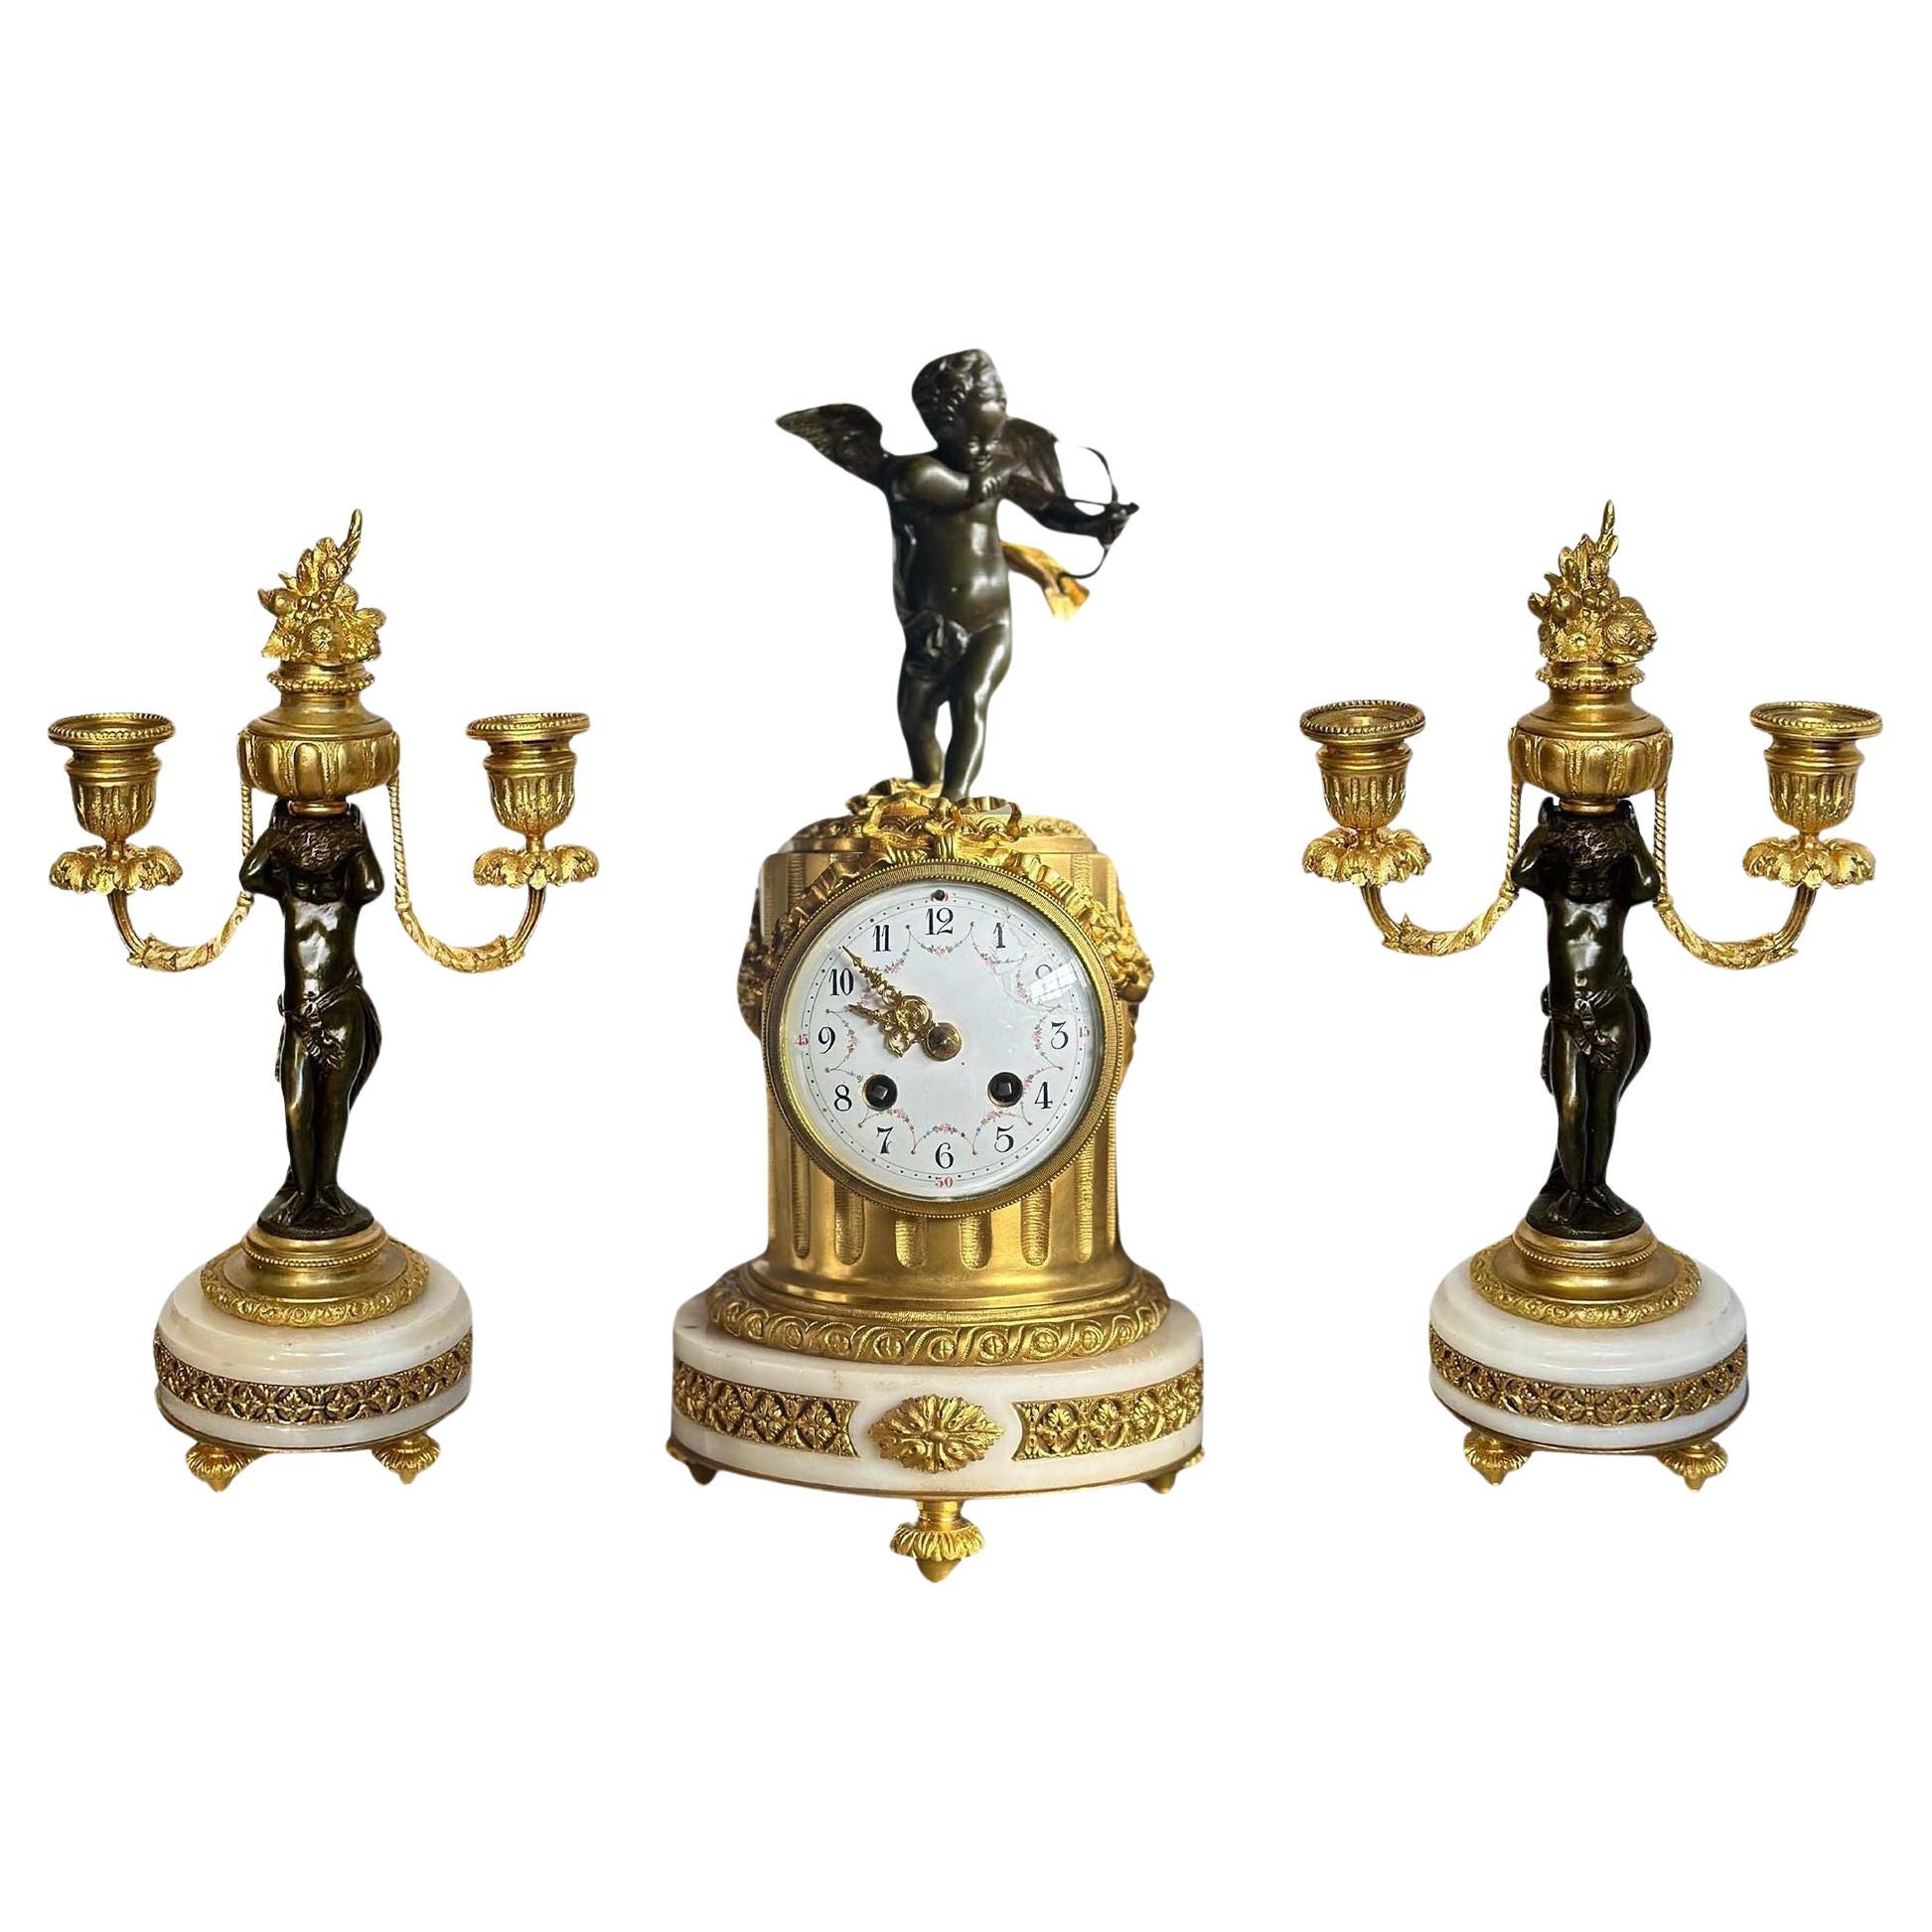 Horloge et chandelier français du 19e siècle avec chérubin